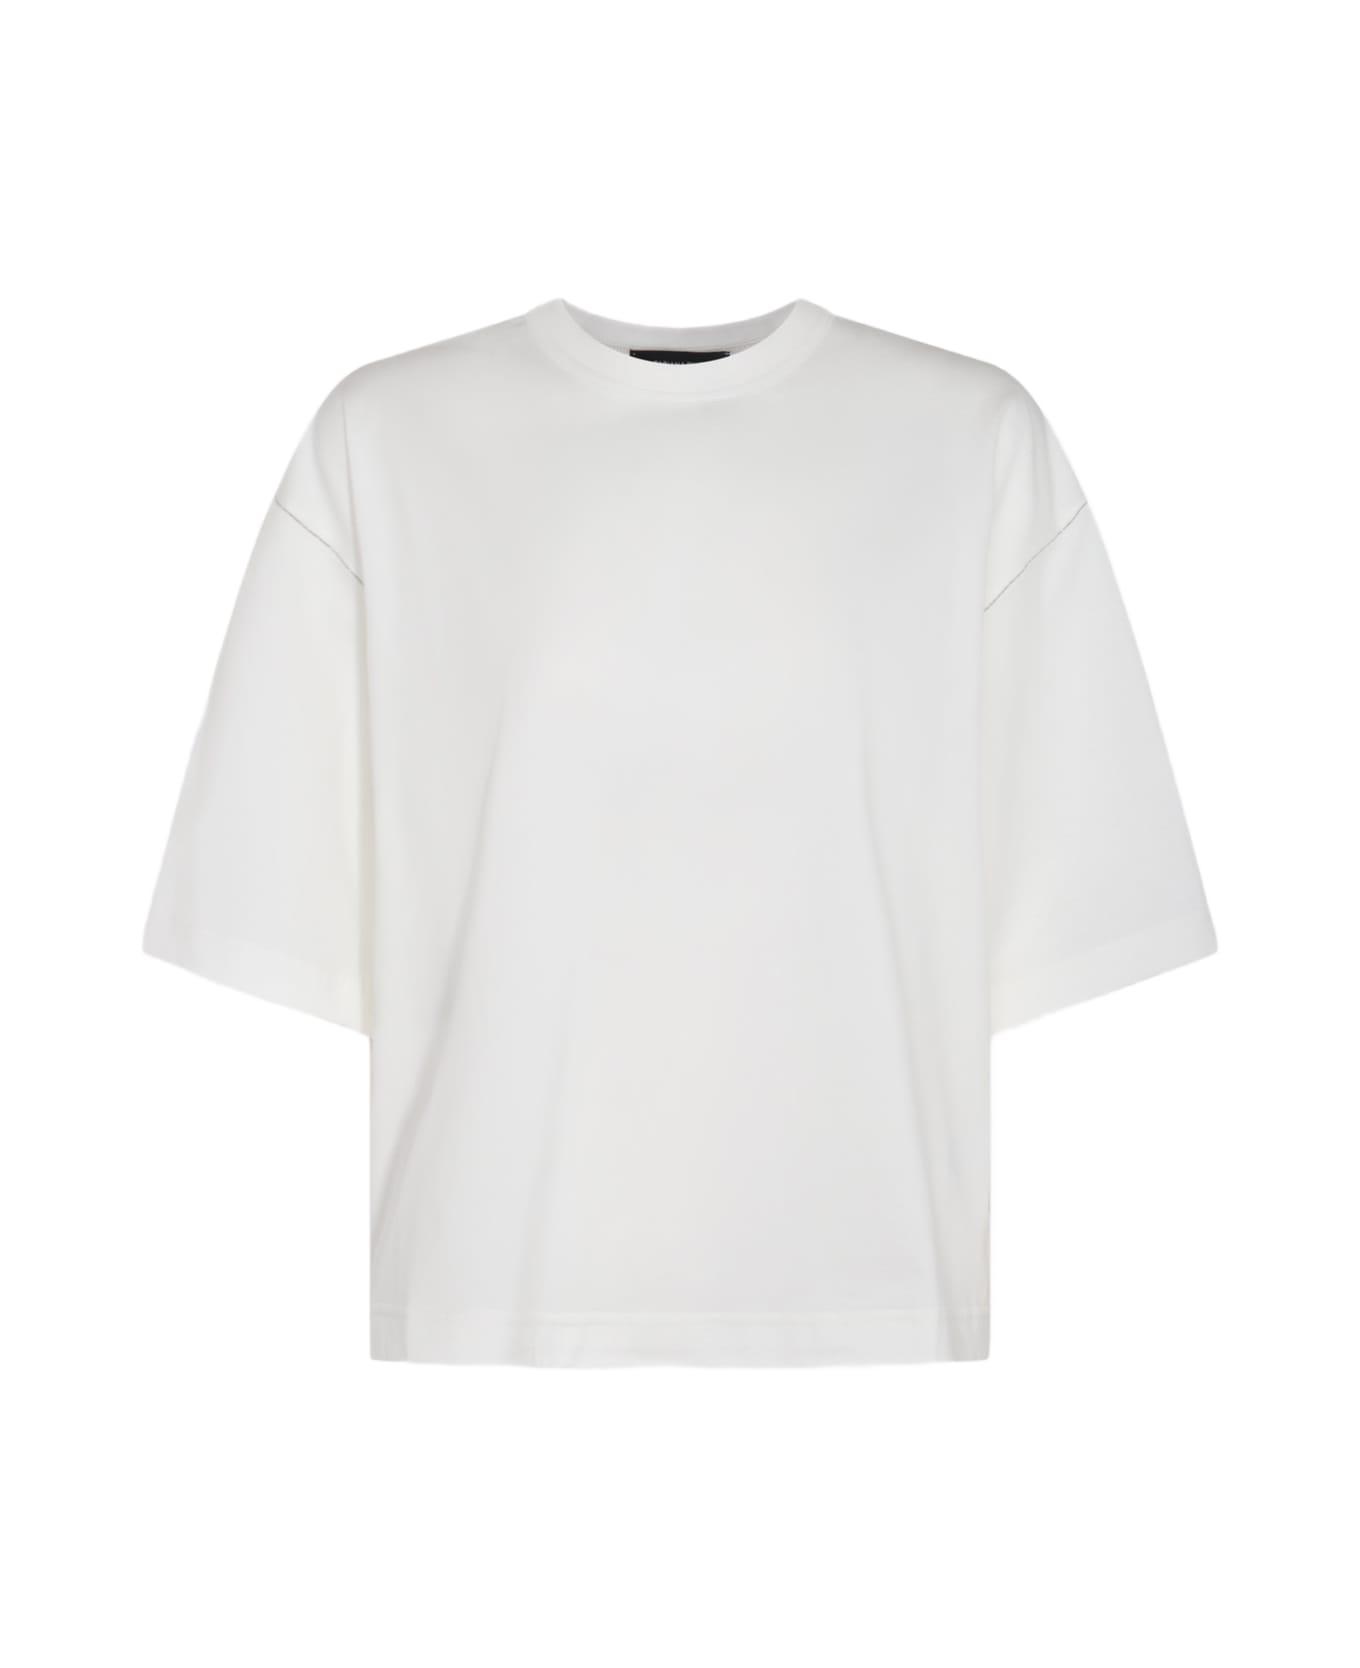 Fabiana Filippi White Cotton T-shirt - White